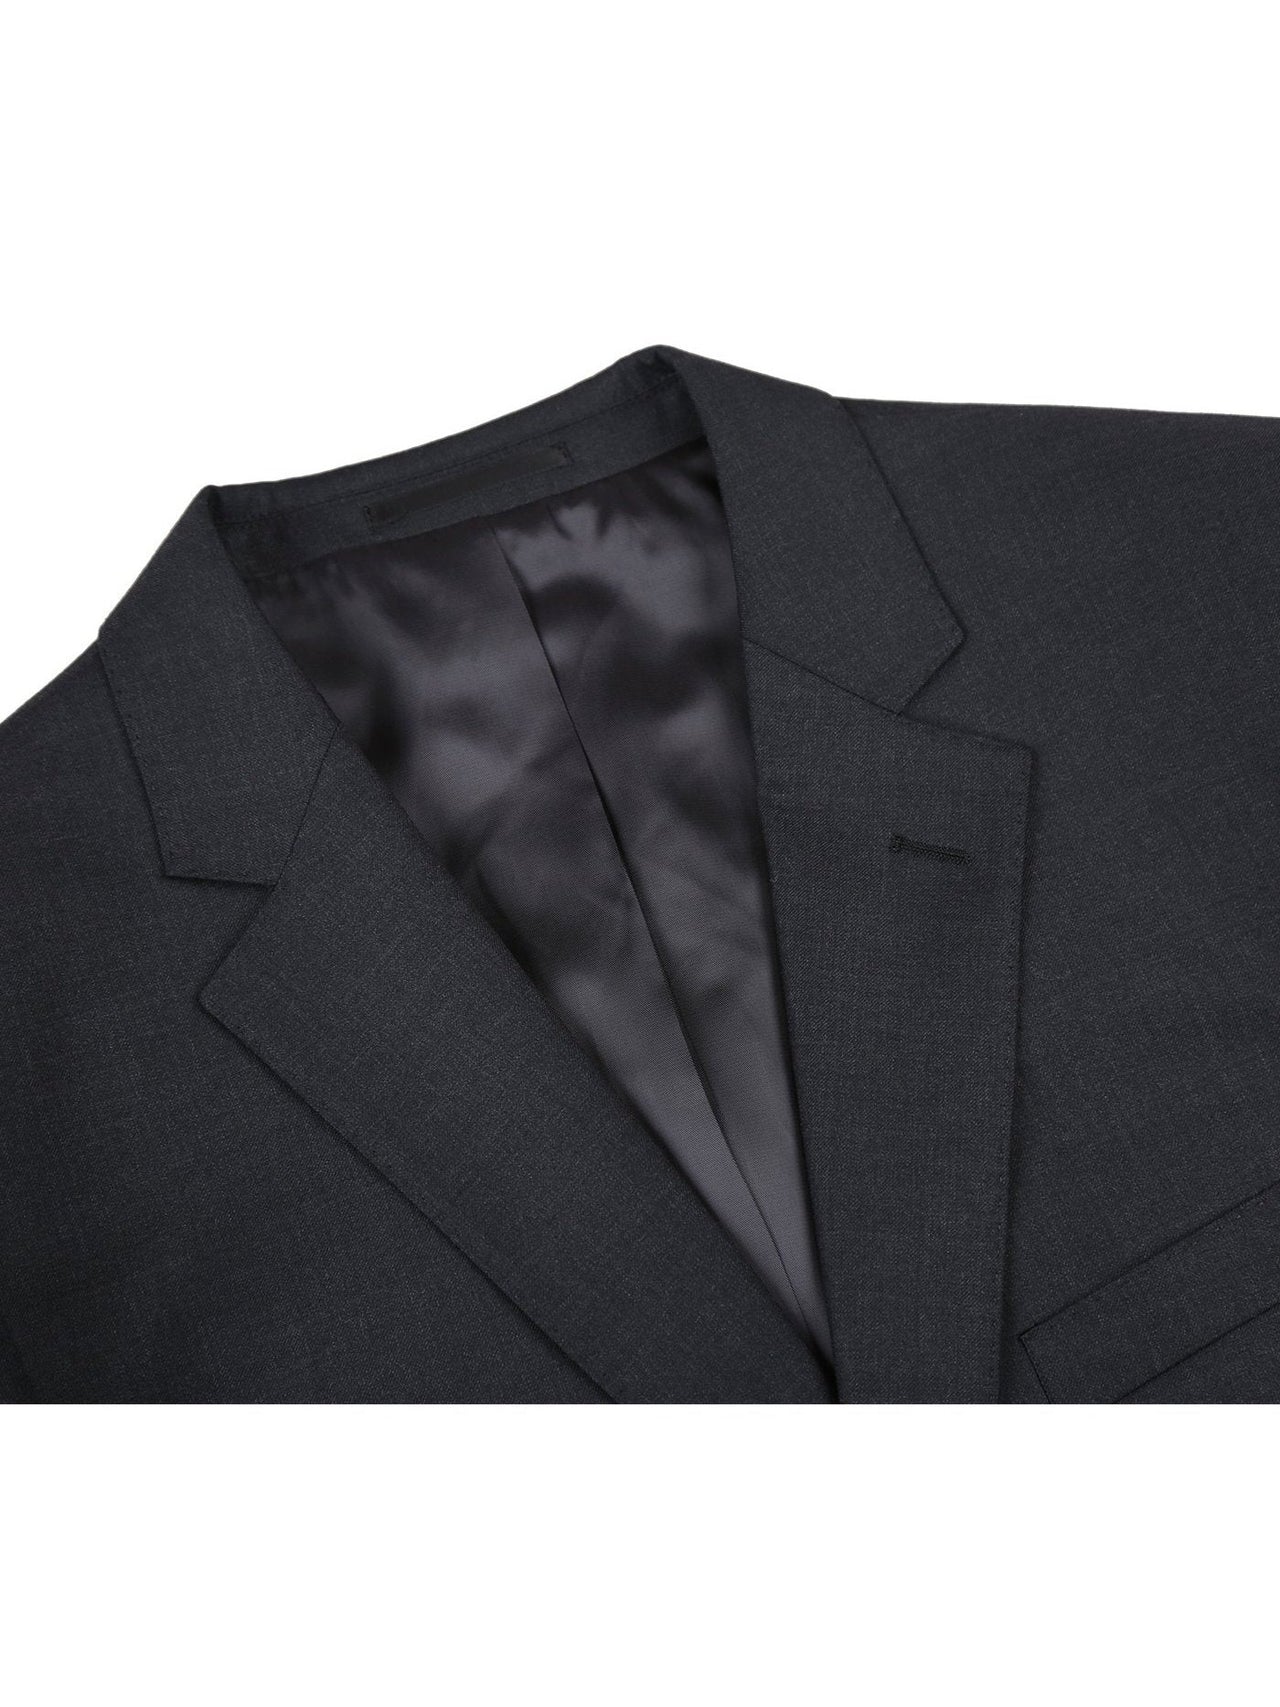 Men's 2-Piece Notch Lapel 100% Wool Suit